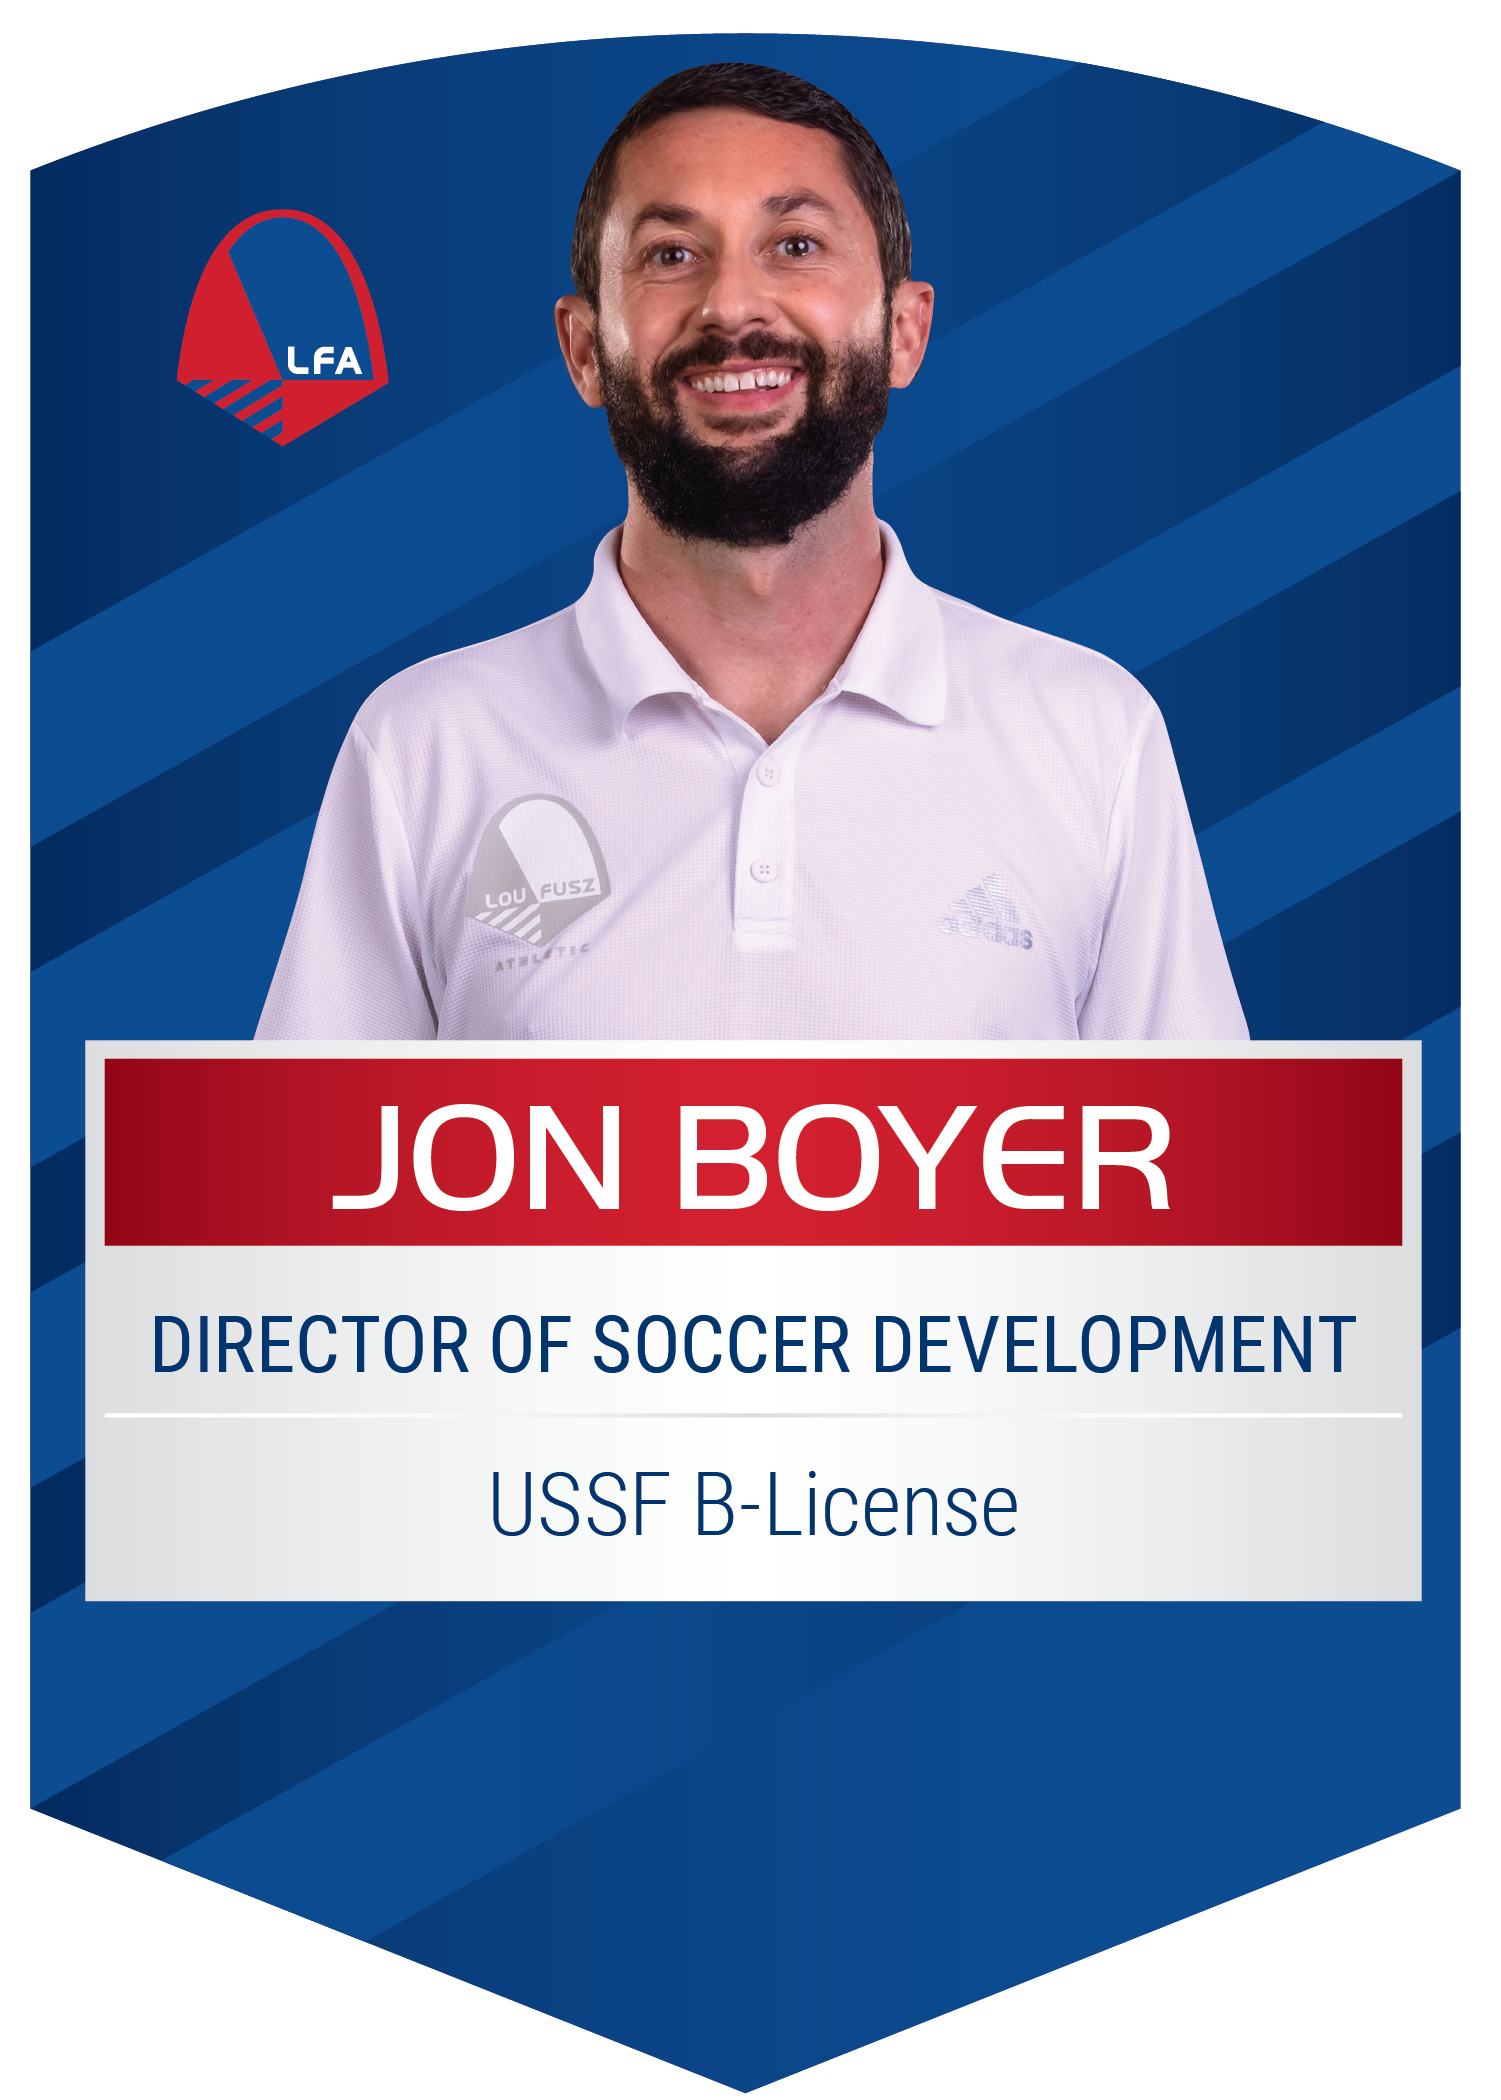 Jon Boyer